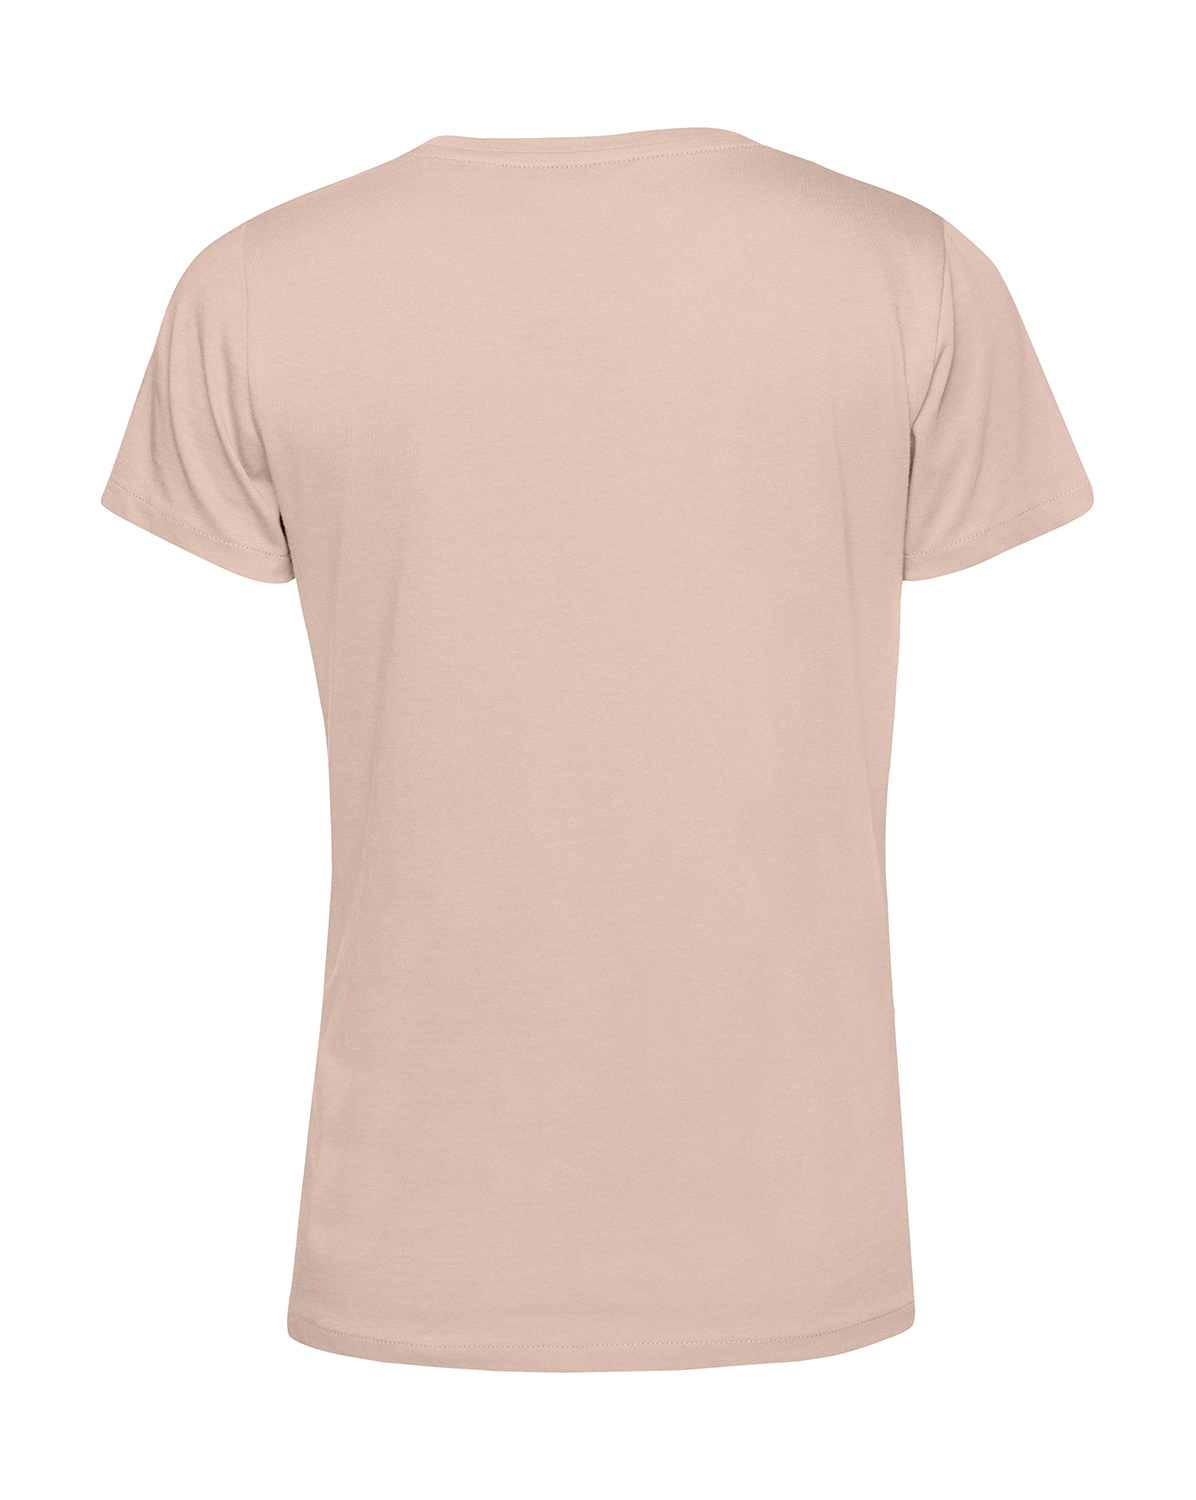 Nachhaltiges T-Shirt Damen 2Takt - Wenn Du keine besitzt MZ